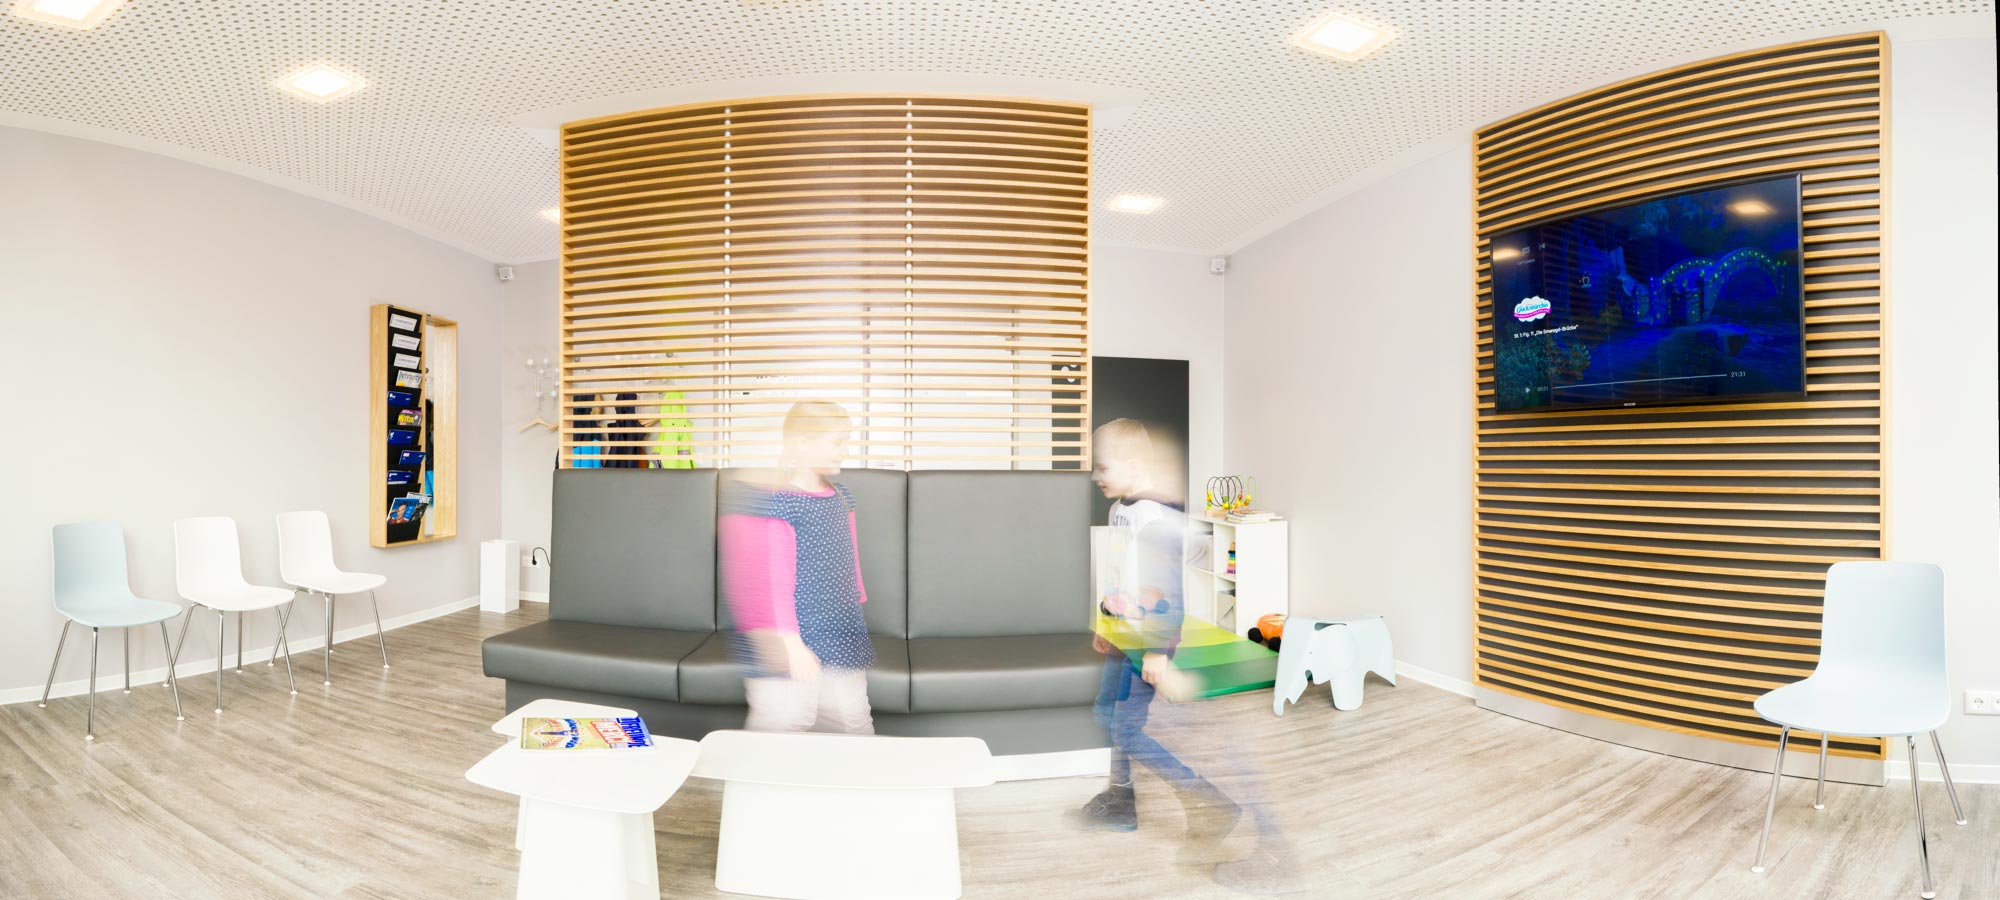 Kindernarkosen im Zentrum für Anästhesie und Schmerztherapie Bielefeld